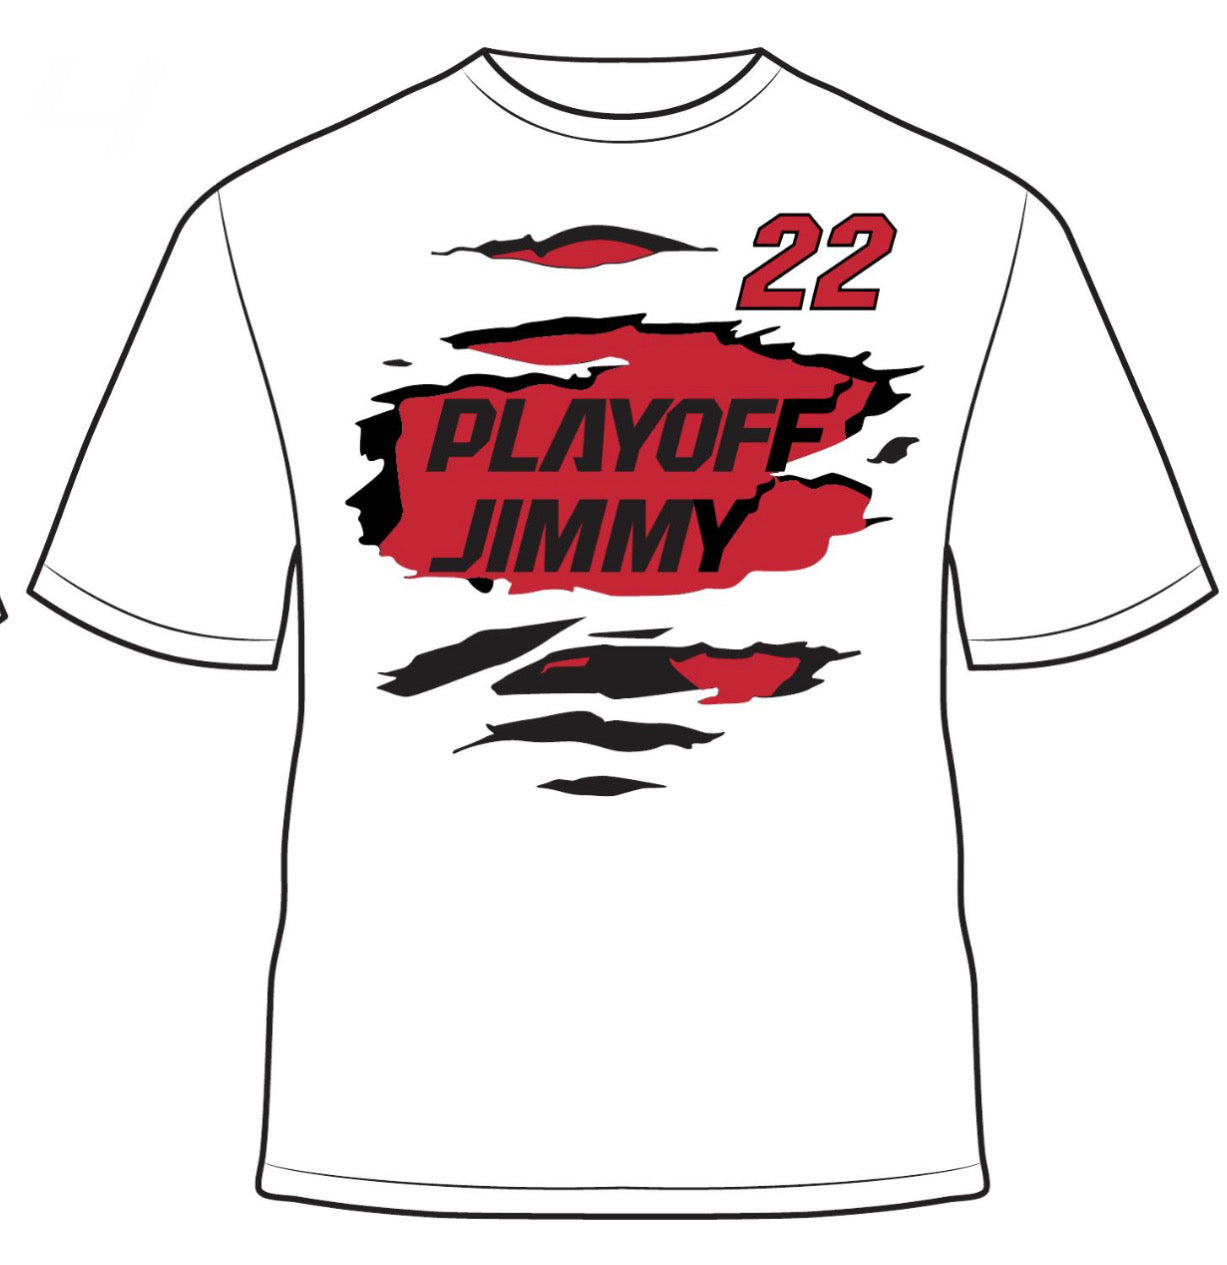 Playoff Jimmy T-Shirt - White